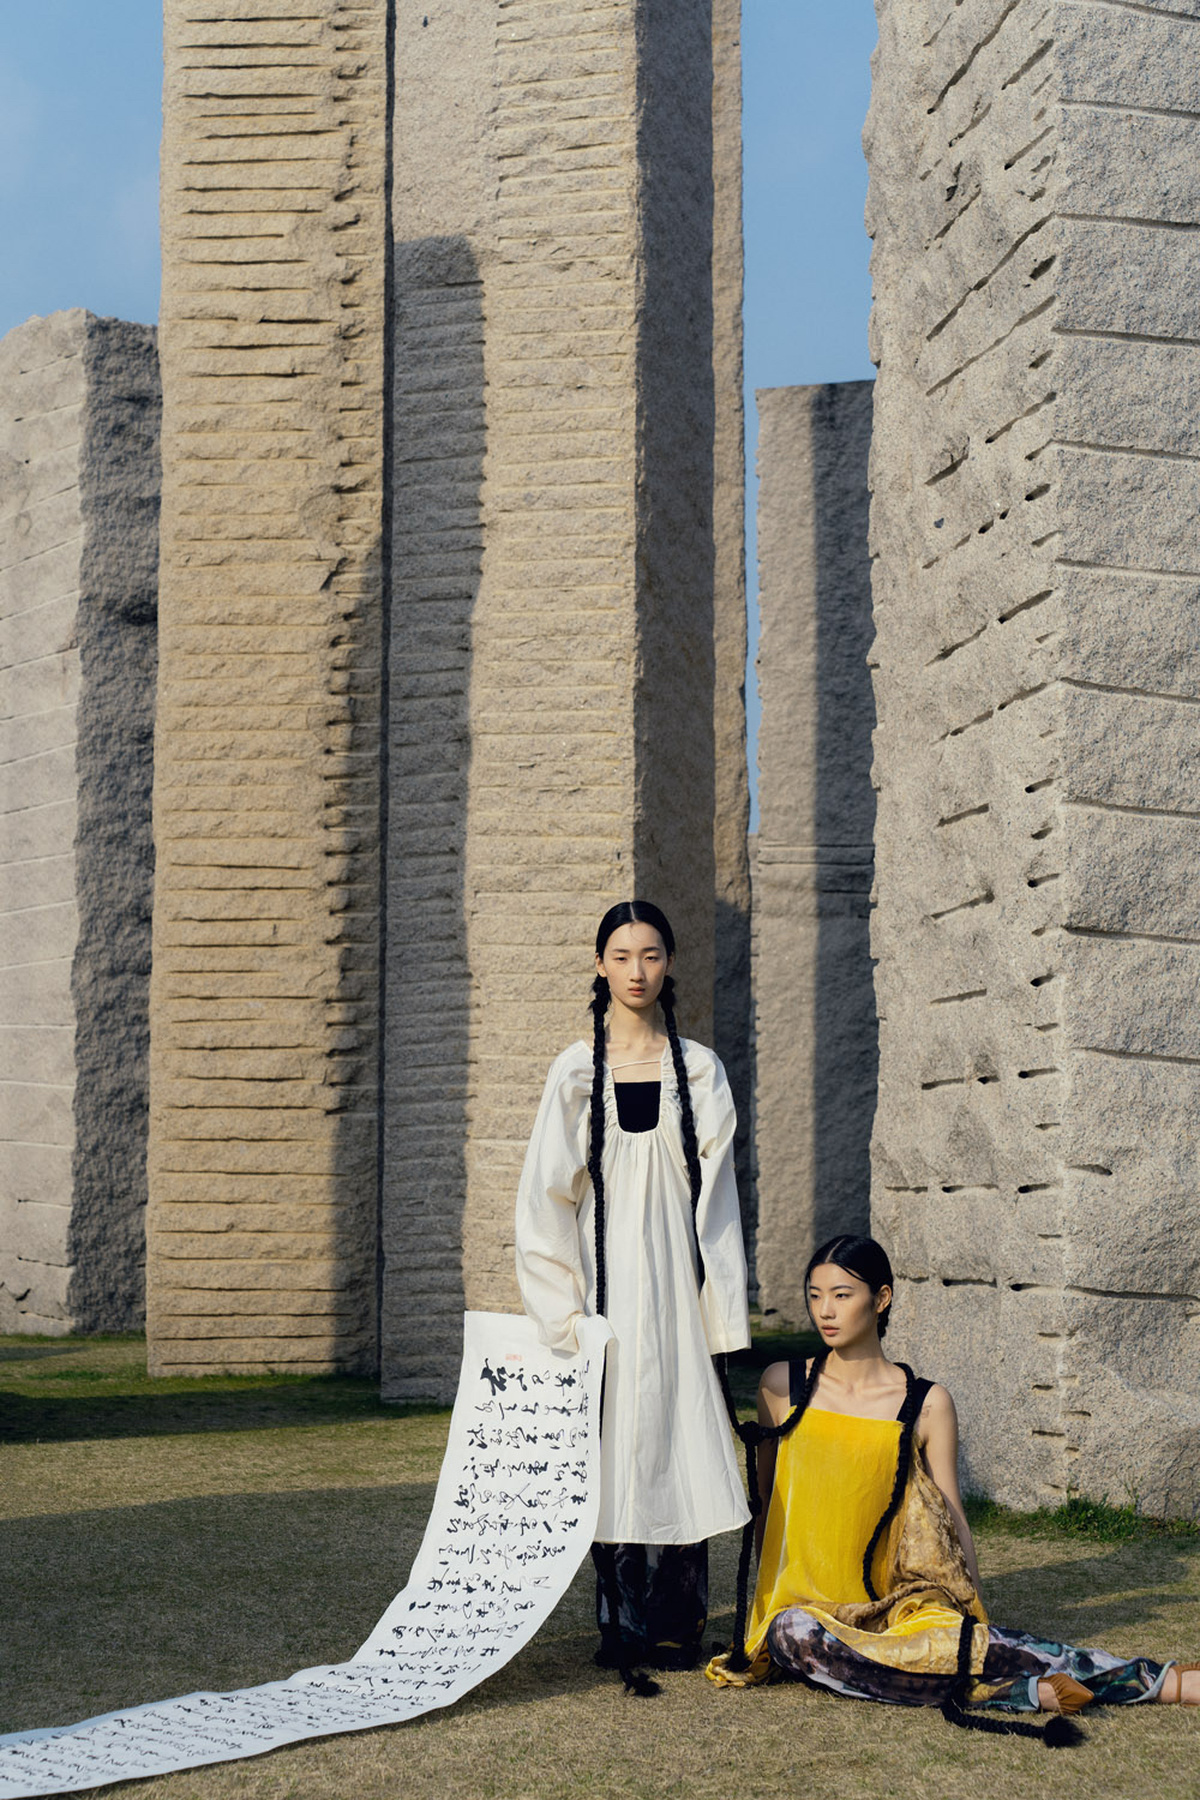 一位年轻女孩和一位妇女站在一个纪念碑前 背景墙上有图案。